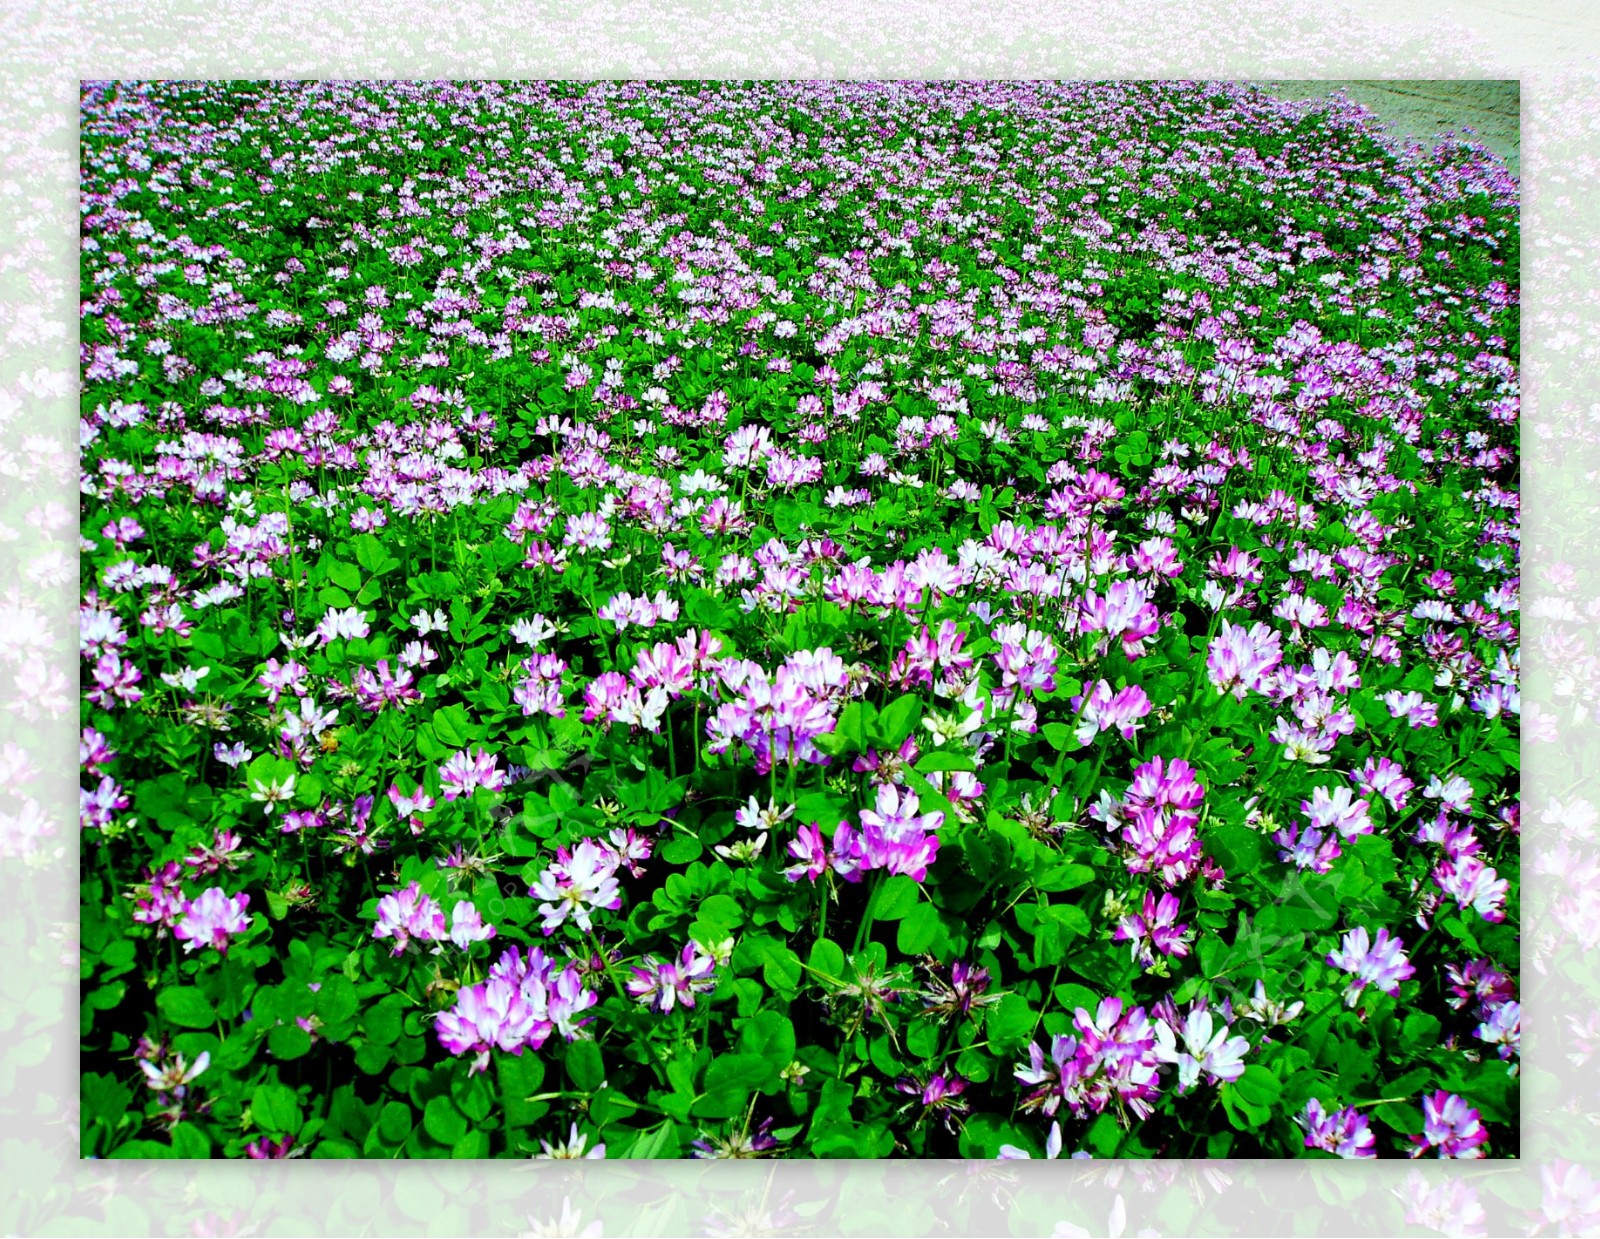 紫云英图片_园林的紫云英图片大全 - 花卉网